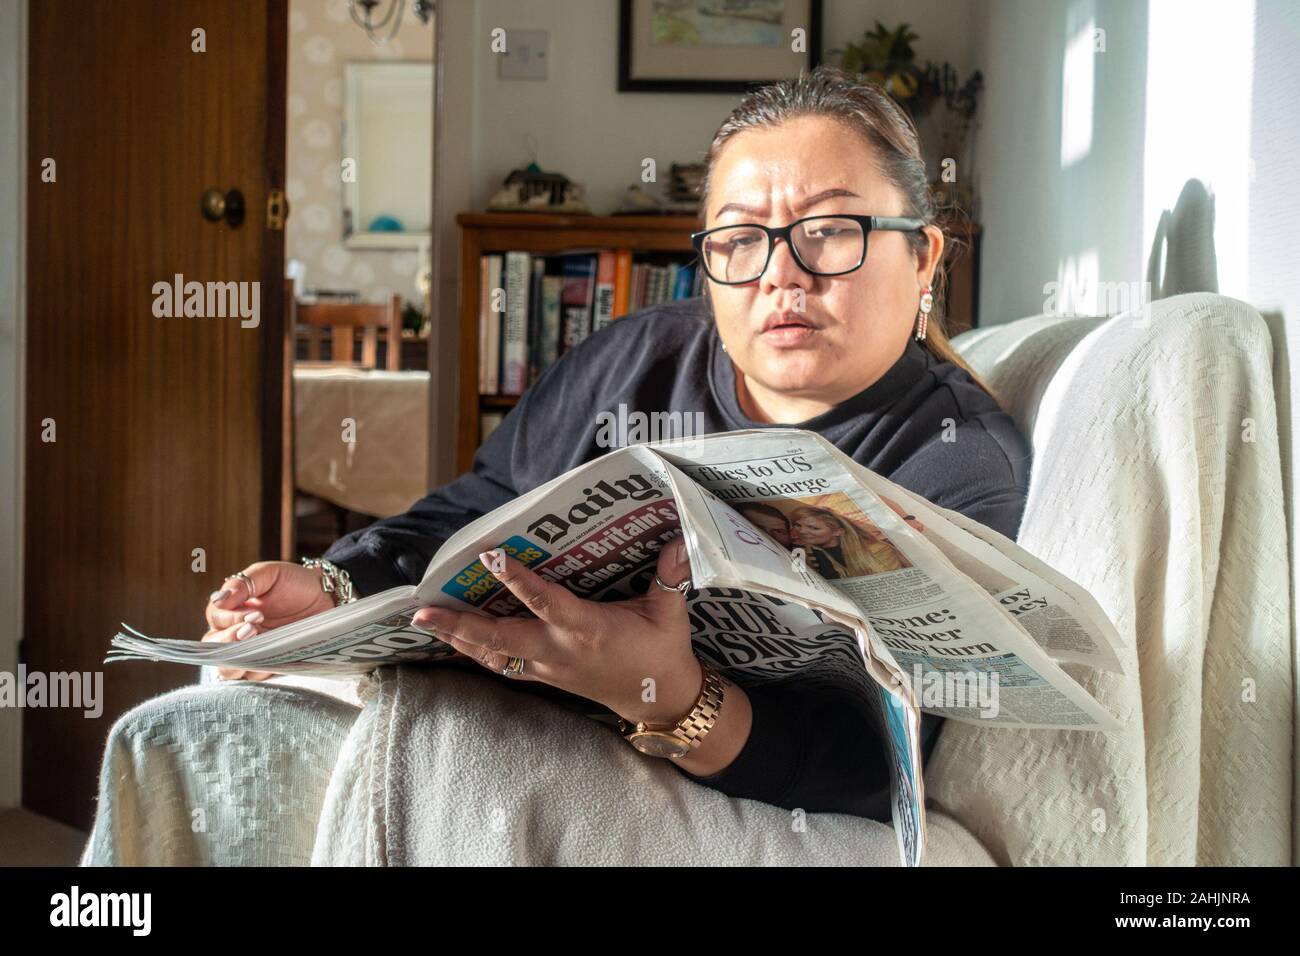 Una donna si siede sul divano e legge un giornale. Foto Stock